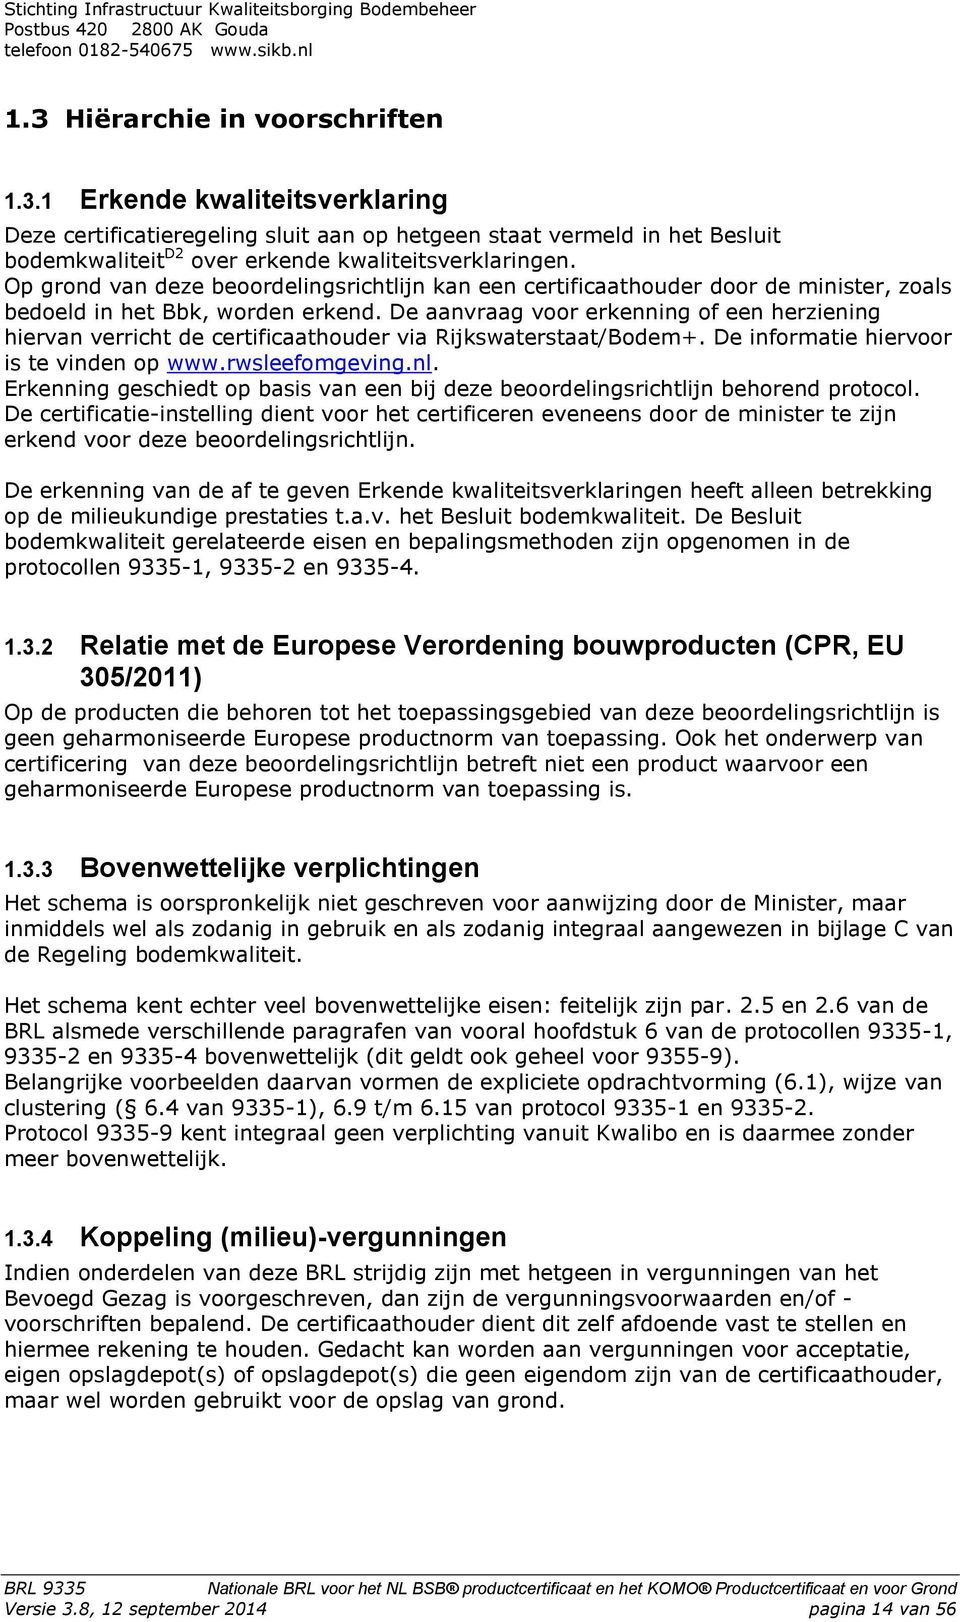 De aanvraag voor erkenning of een herziening hiervan verricht de certificaathouder via Rijkswaterstaat/Bodem+. De informatie hiervoor is te vinden op www.rwsleefomgeving.nl.